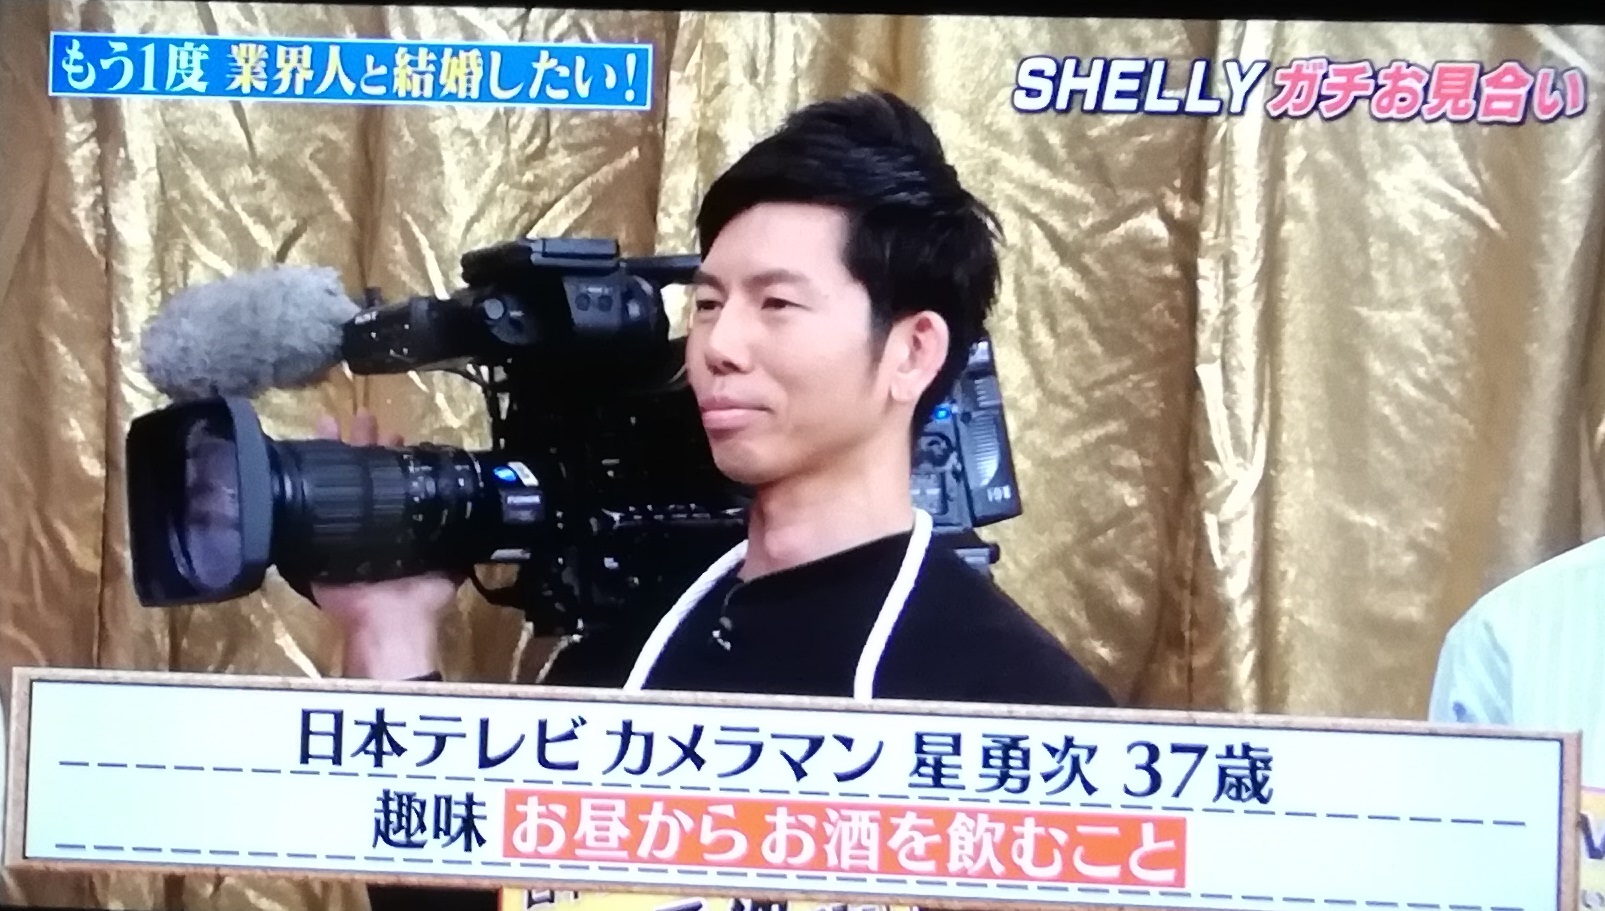 星勇次 Shelly 新彼氏候補 顔画像や経歴や職業は しゃべくりで日本テレビカメラマンとline交換 キニナル記